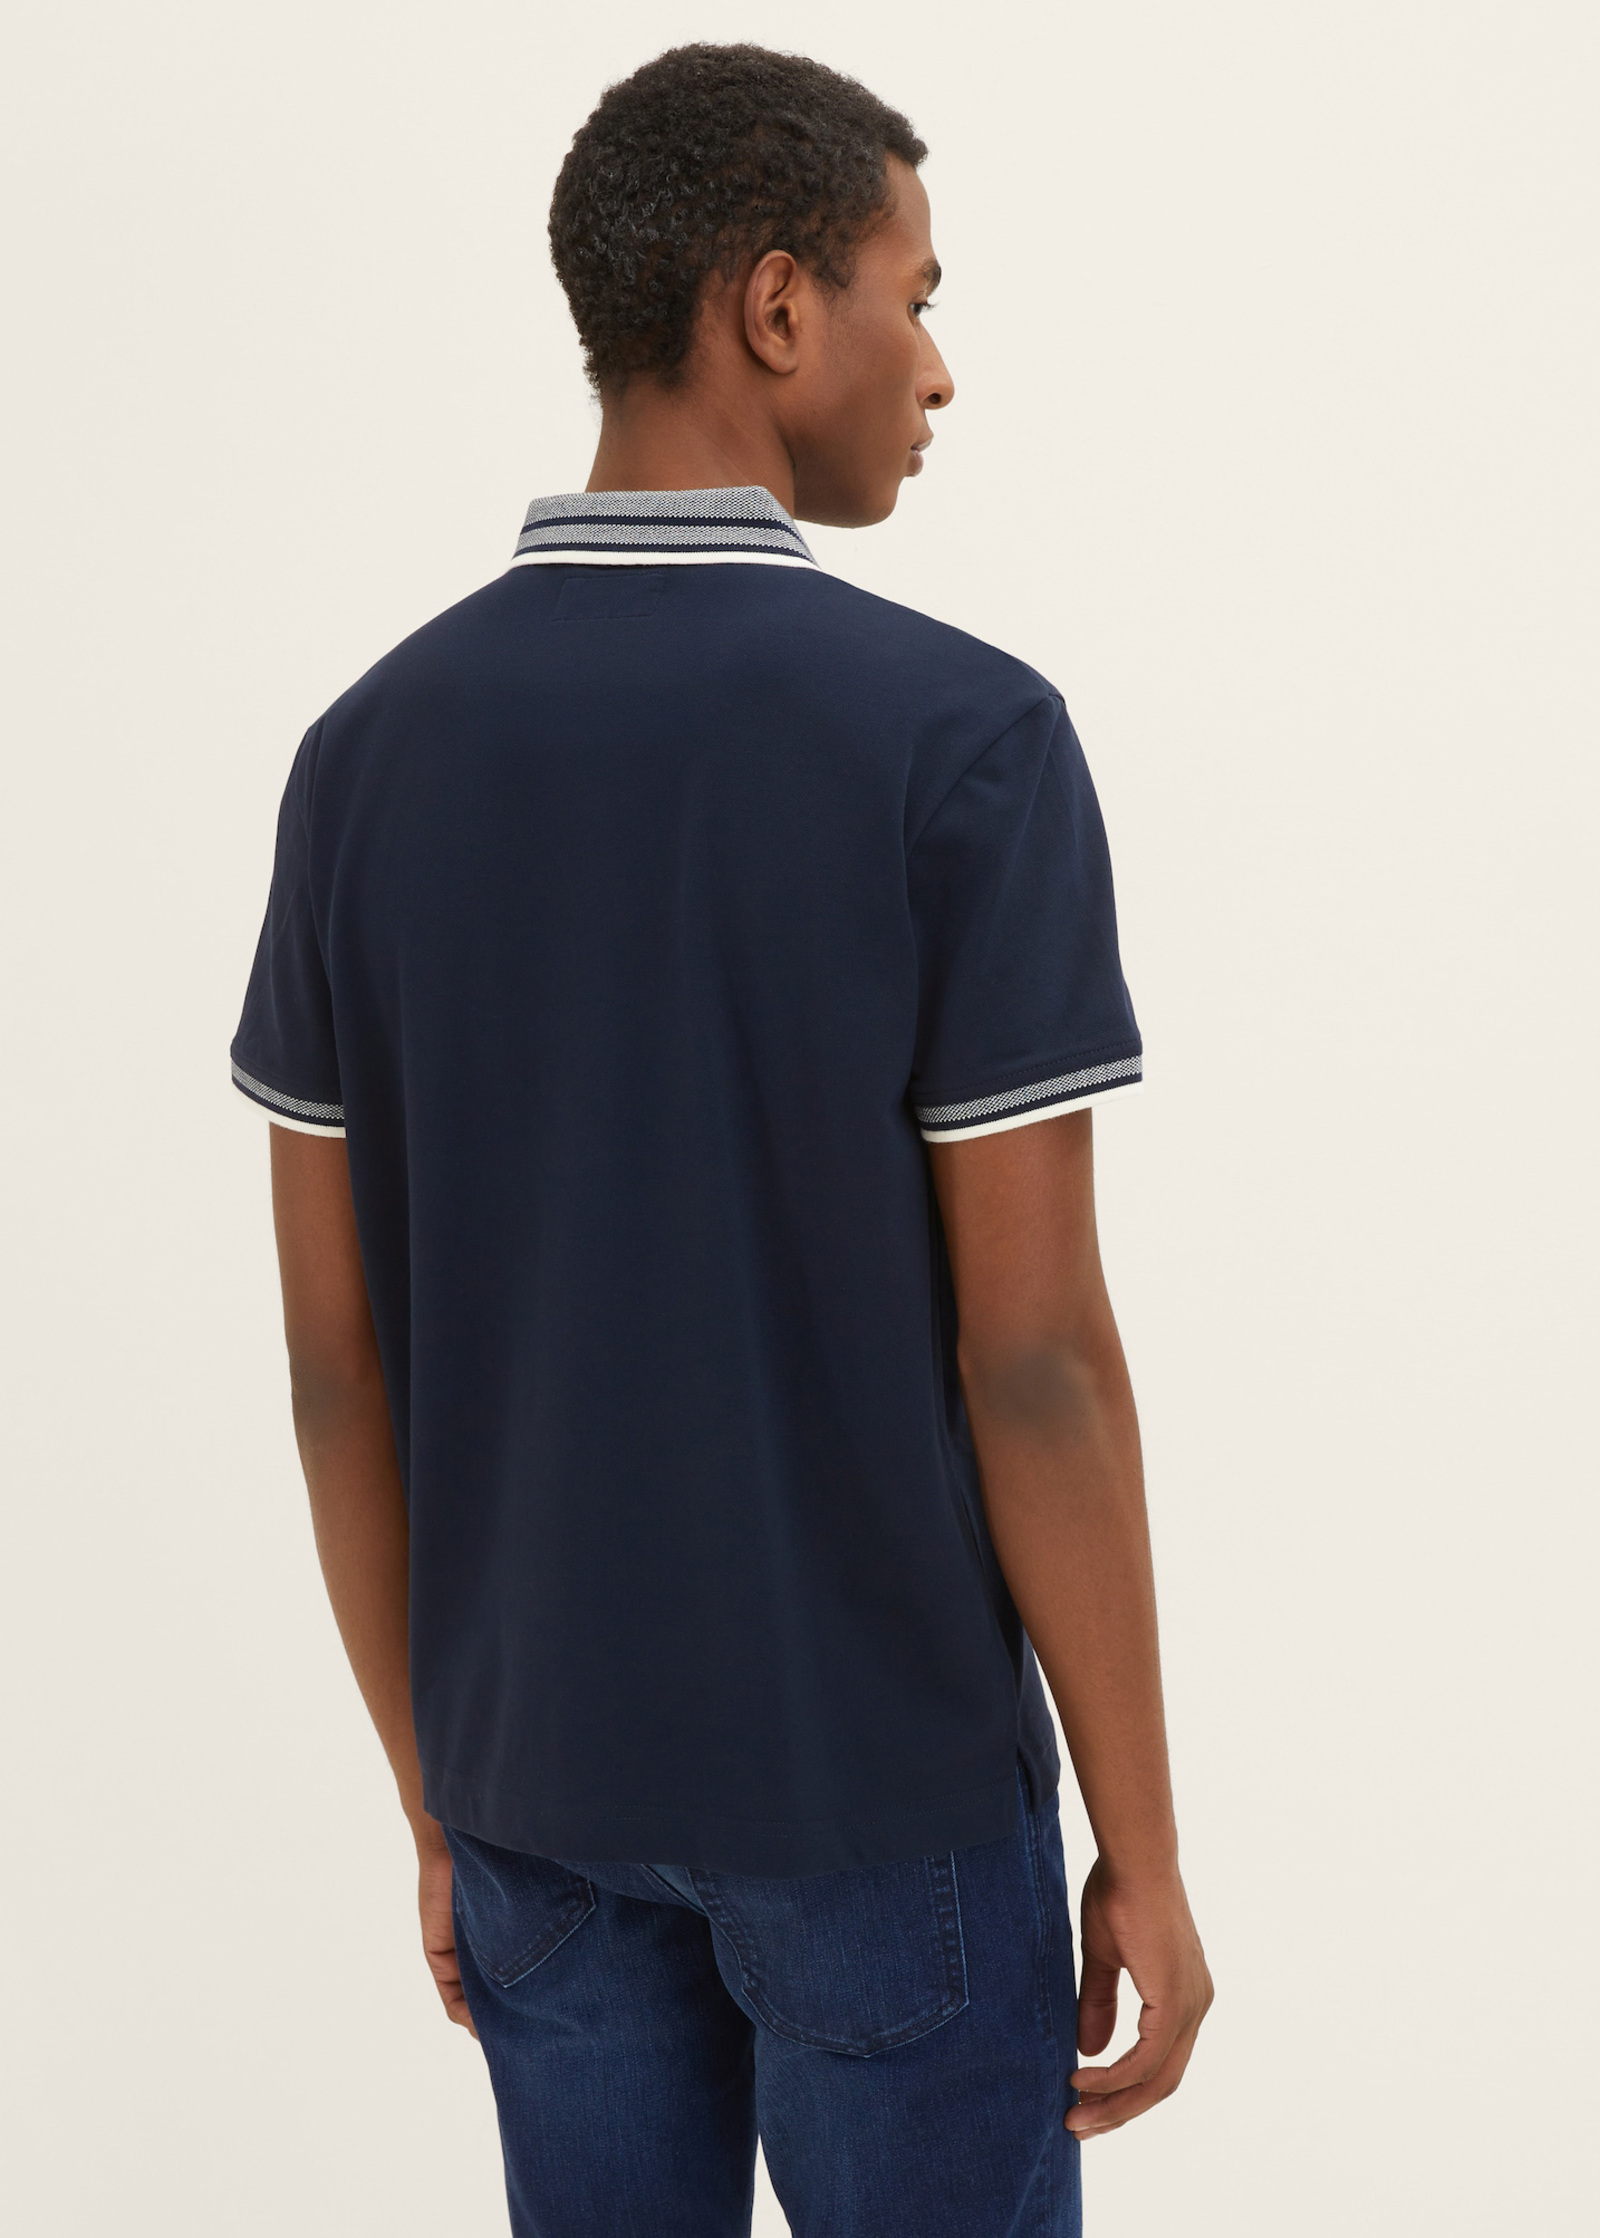 Tom Tailor® XL Sky - Polo Basic Size shirt Captain Blue